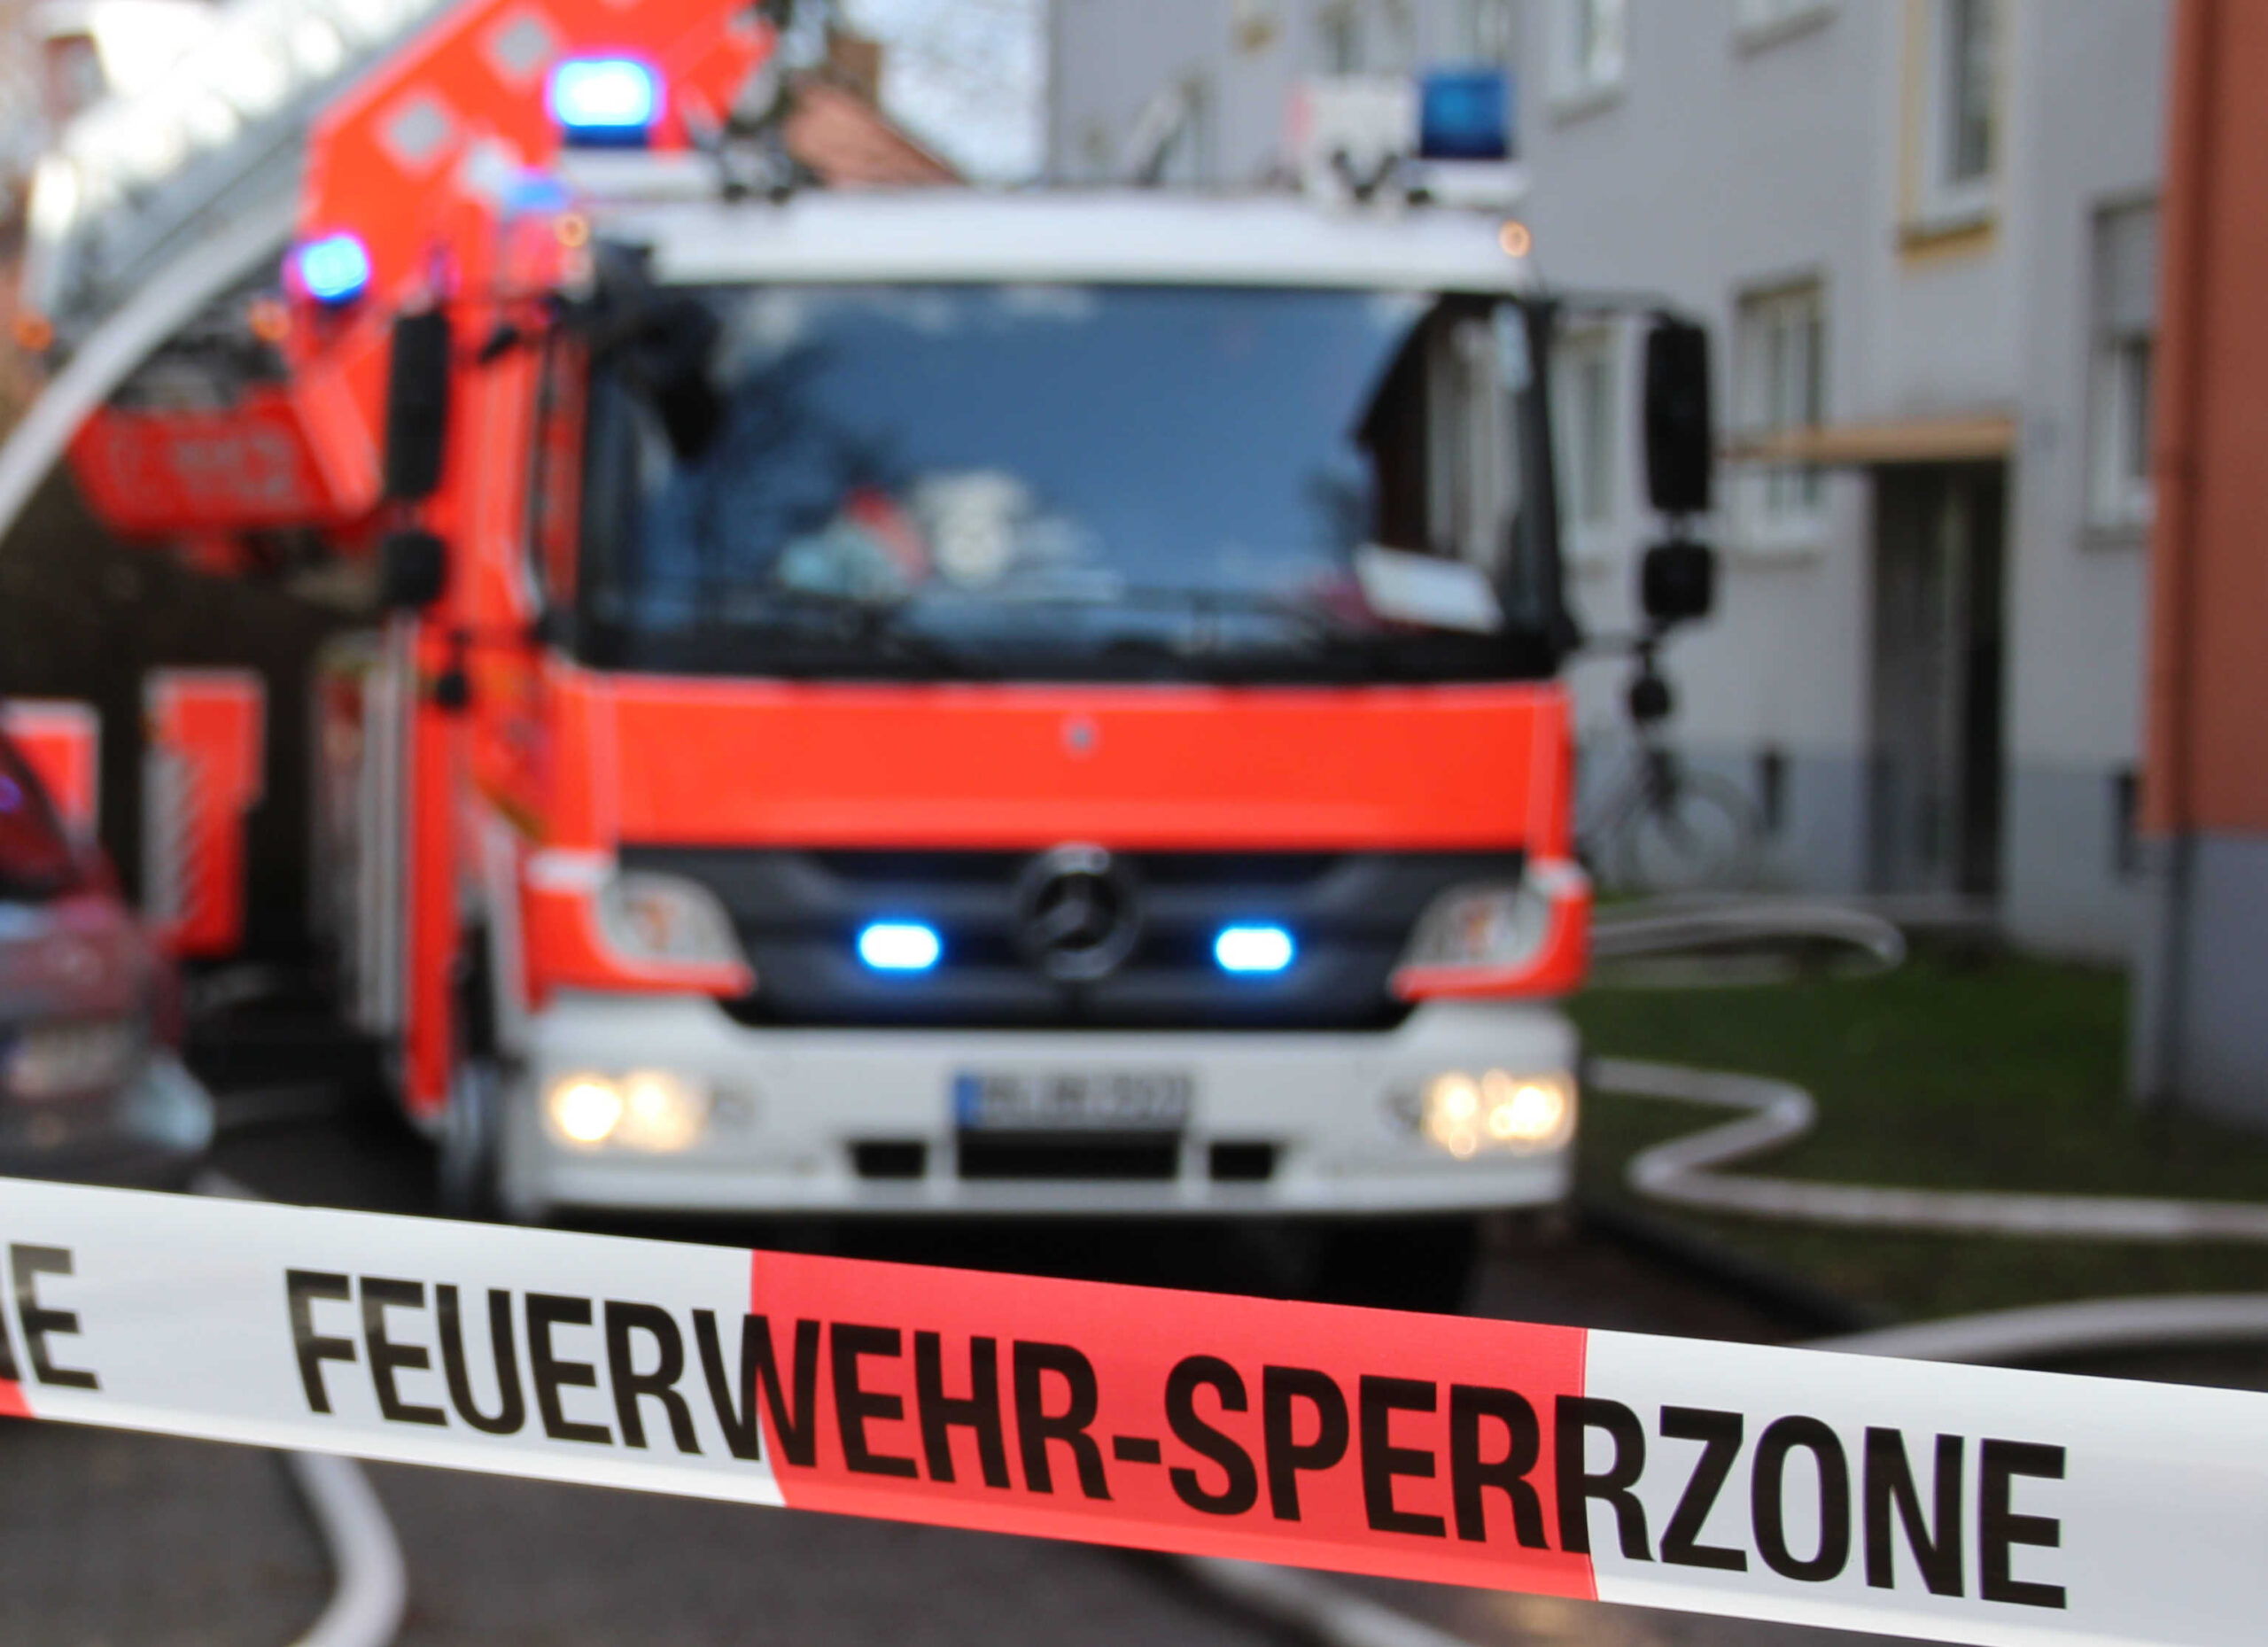 Bonn: Gasausströmung im Keller führt zu Feuerwehreinsatz